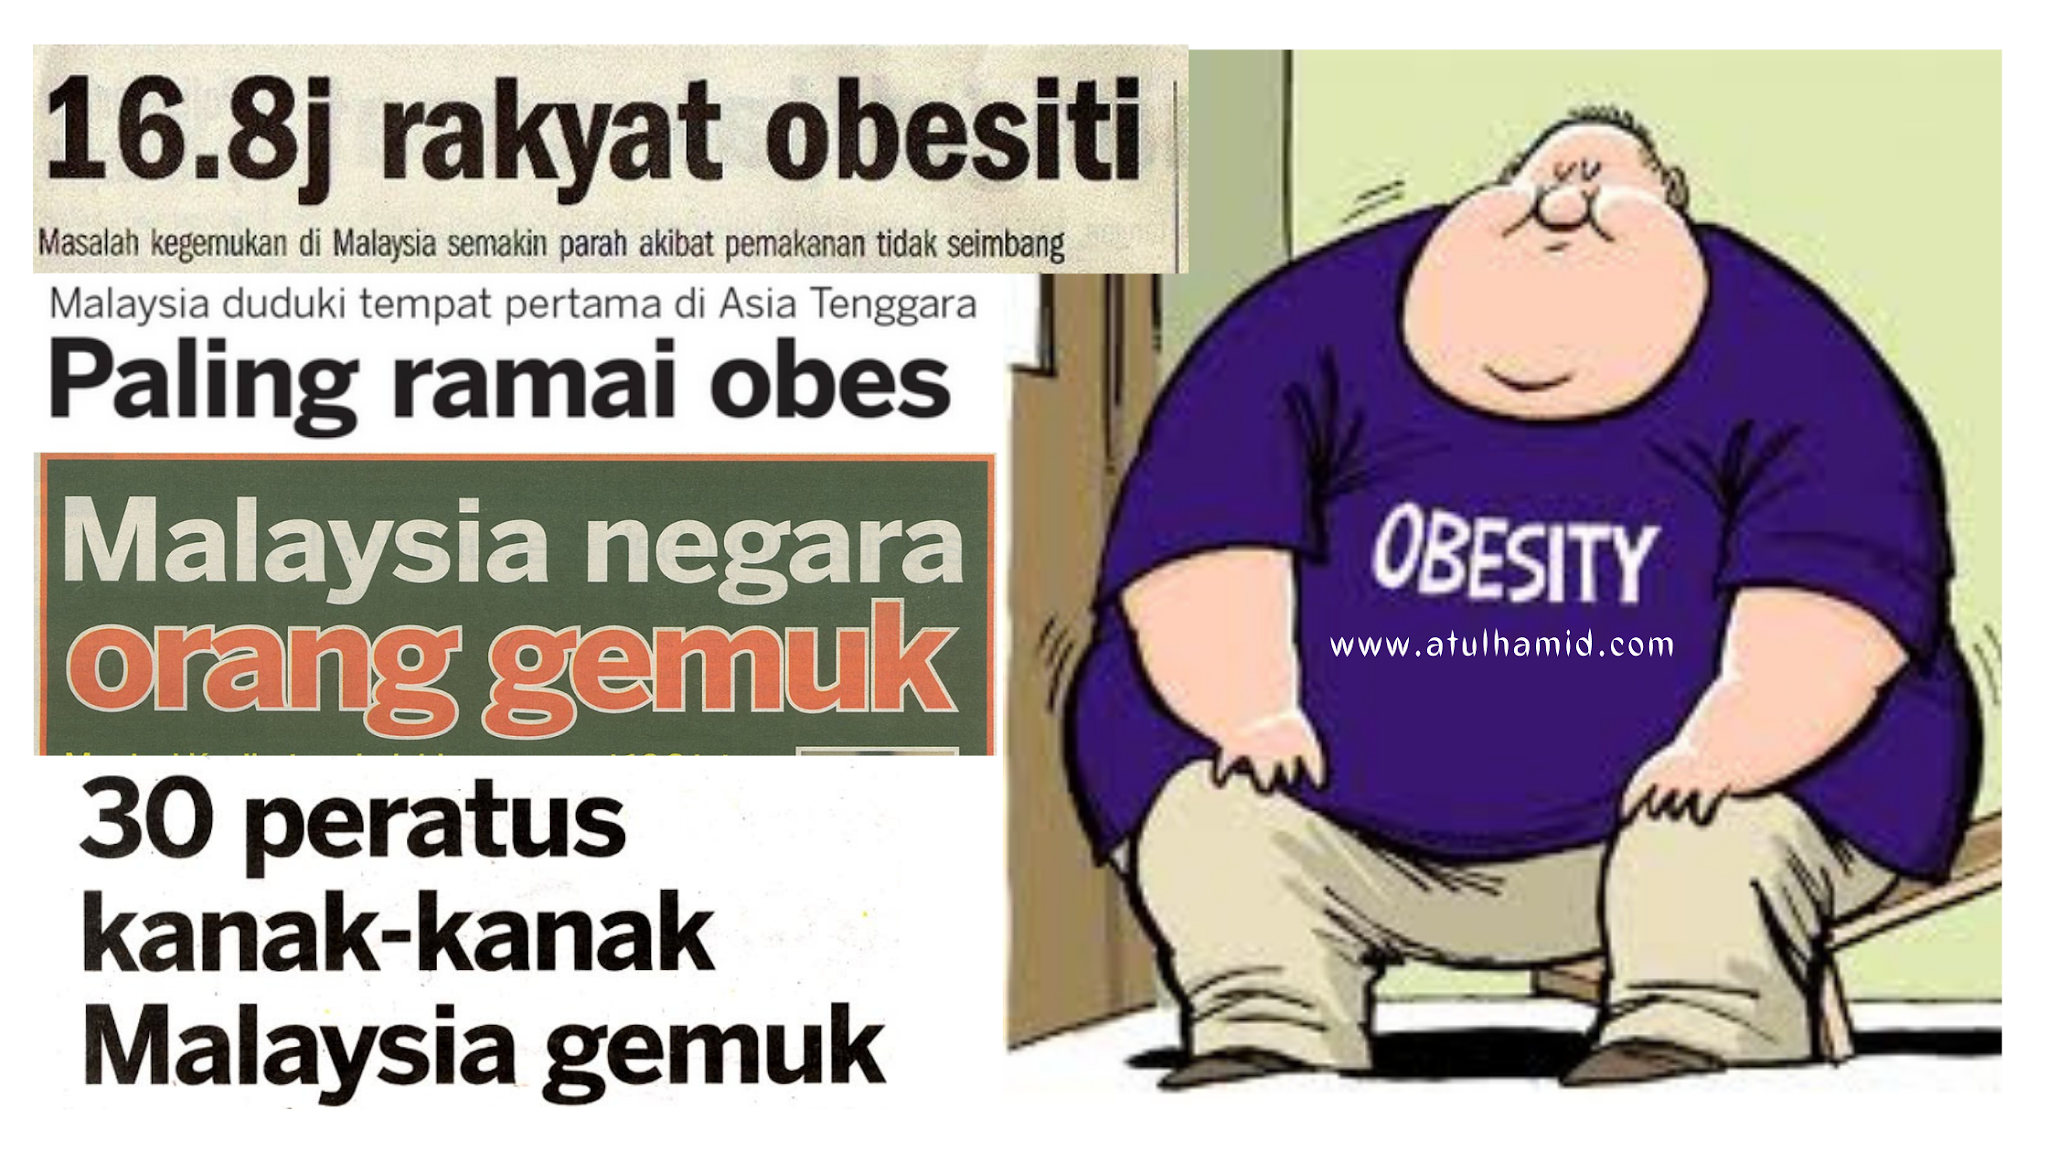 Punca obesiti dikalangan rakyat Malaysia